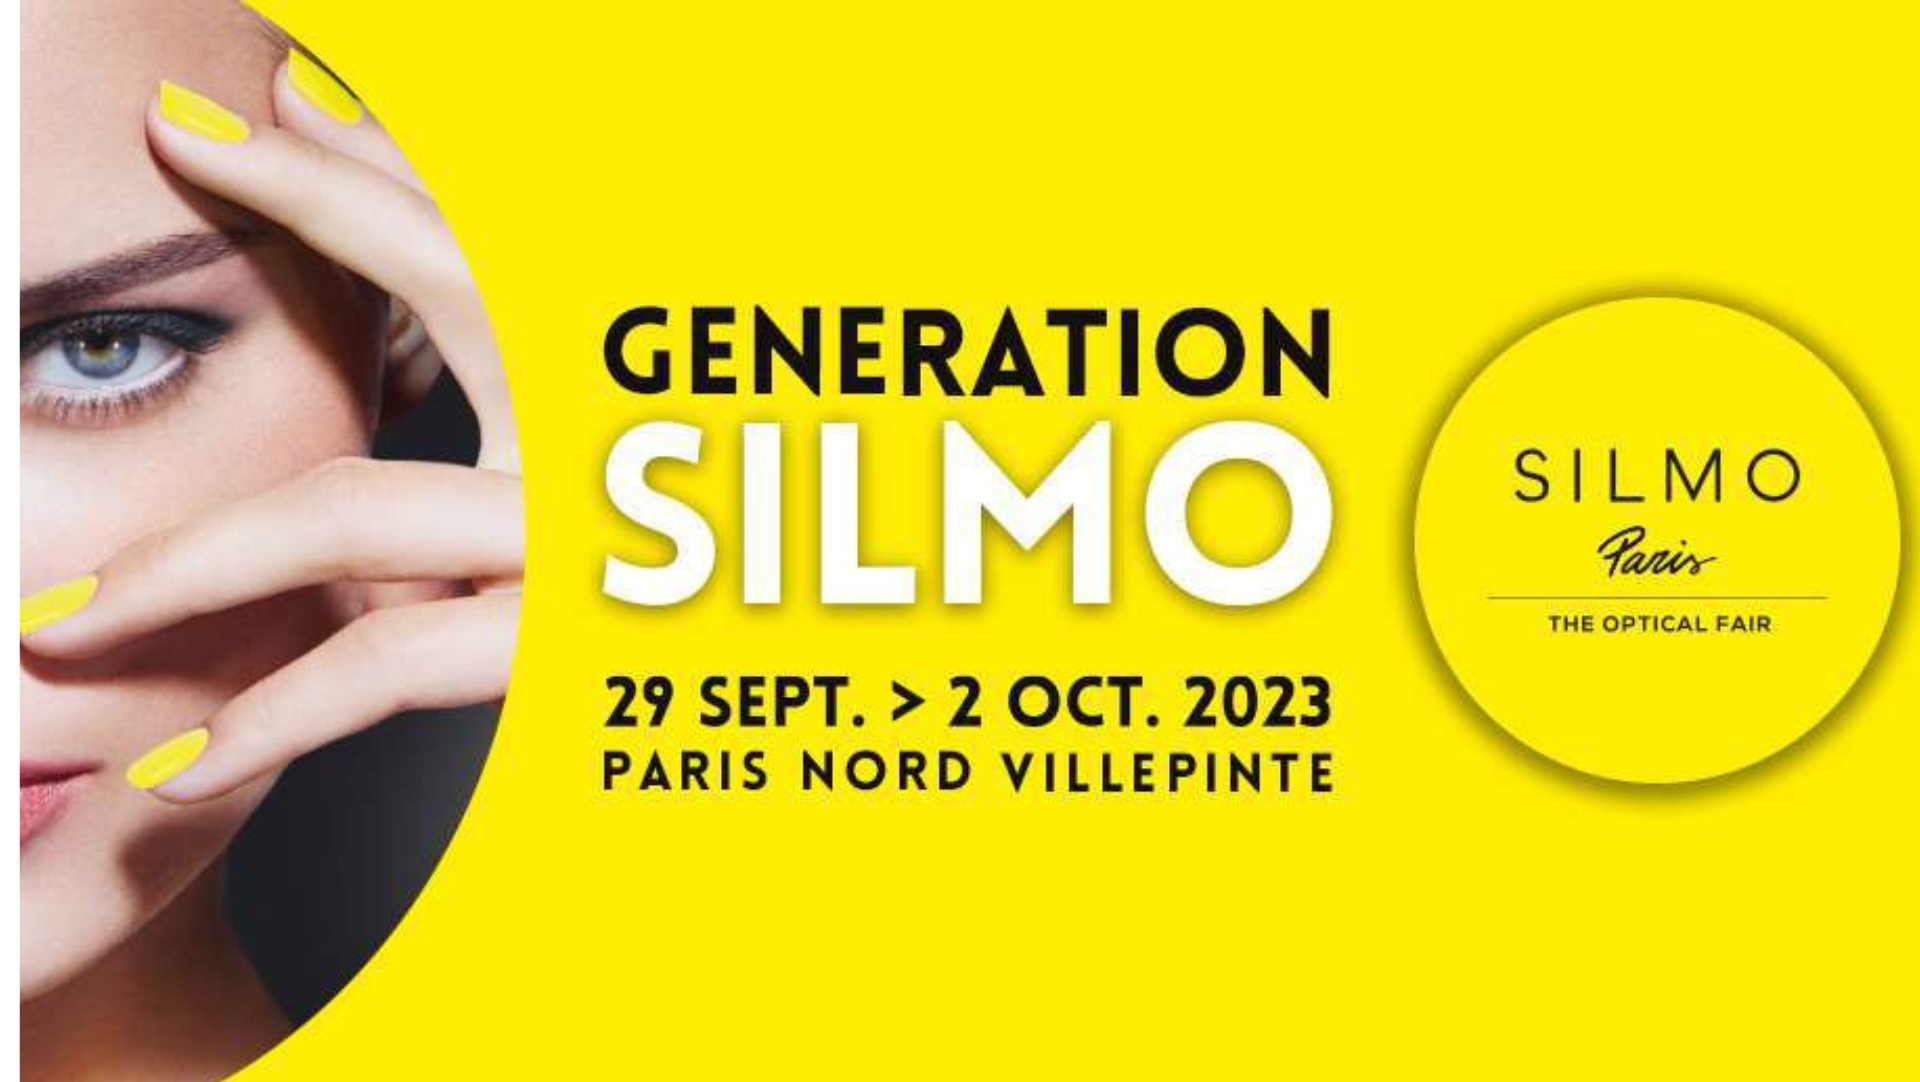 Silmo Paris 2023 Brilmode.nl